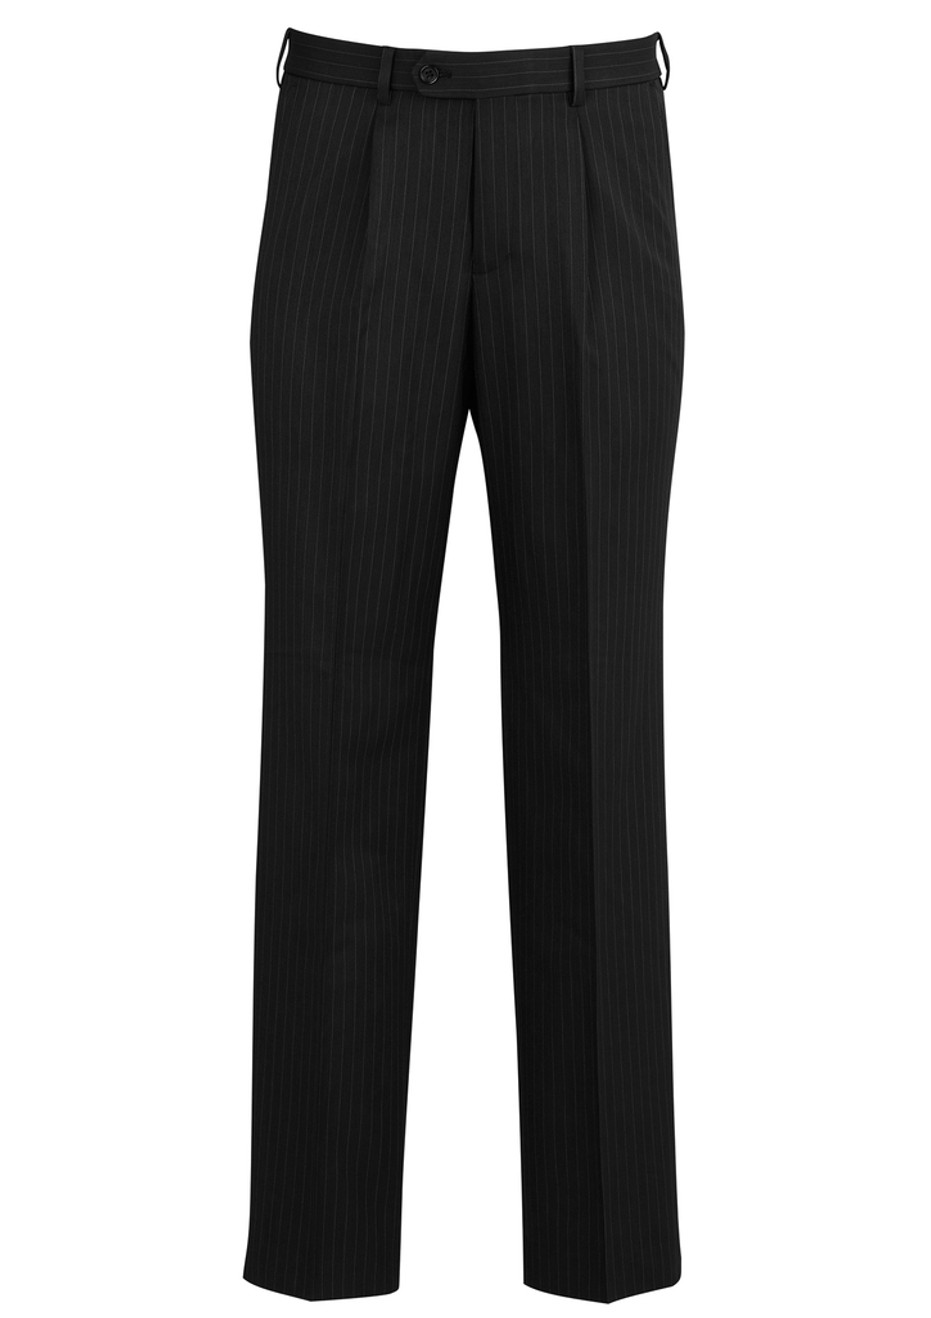 Biz Corporates 70211 MEN'S One Pleat Pant | Available Colours: Navy, Black, Charcoal